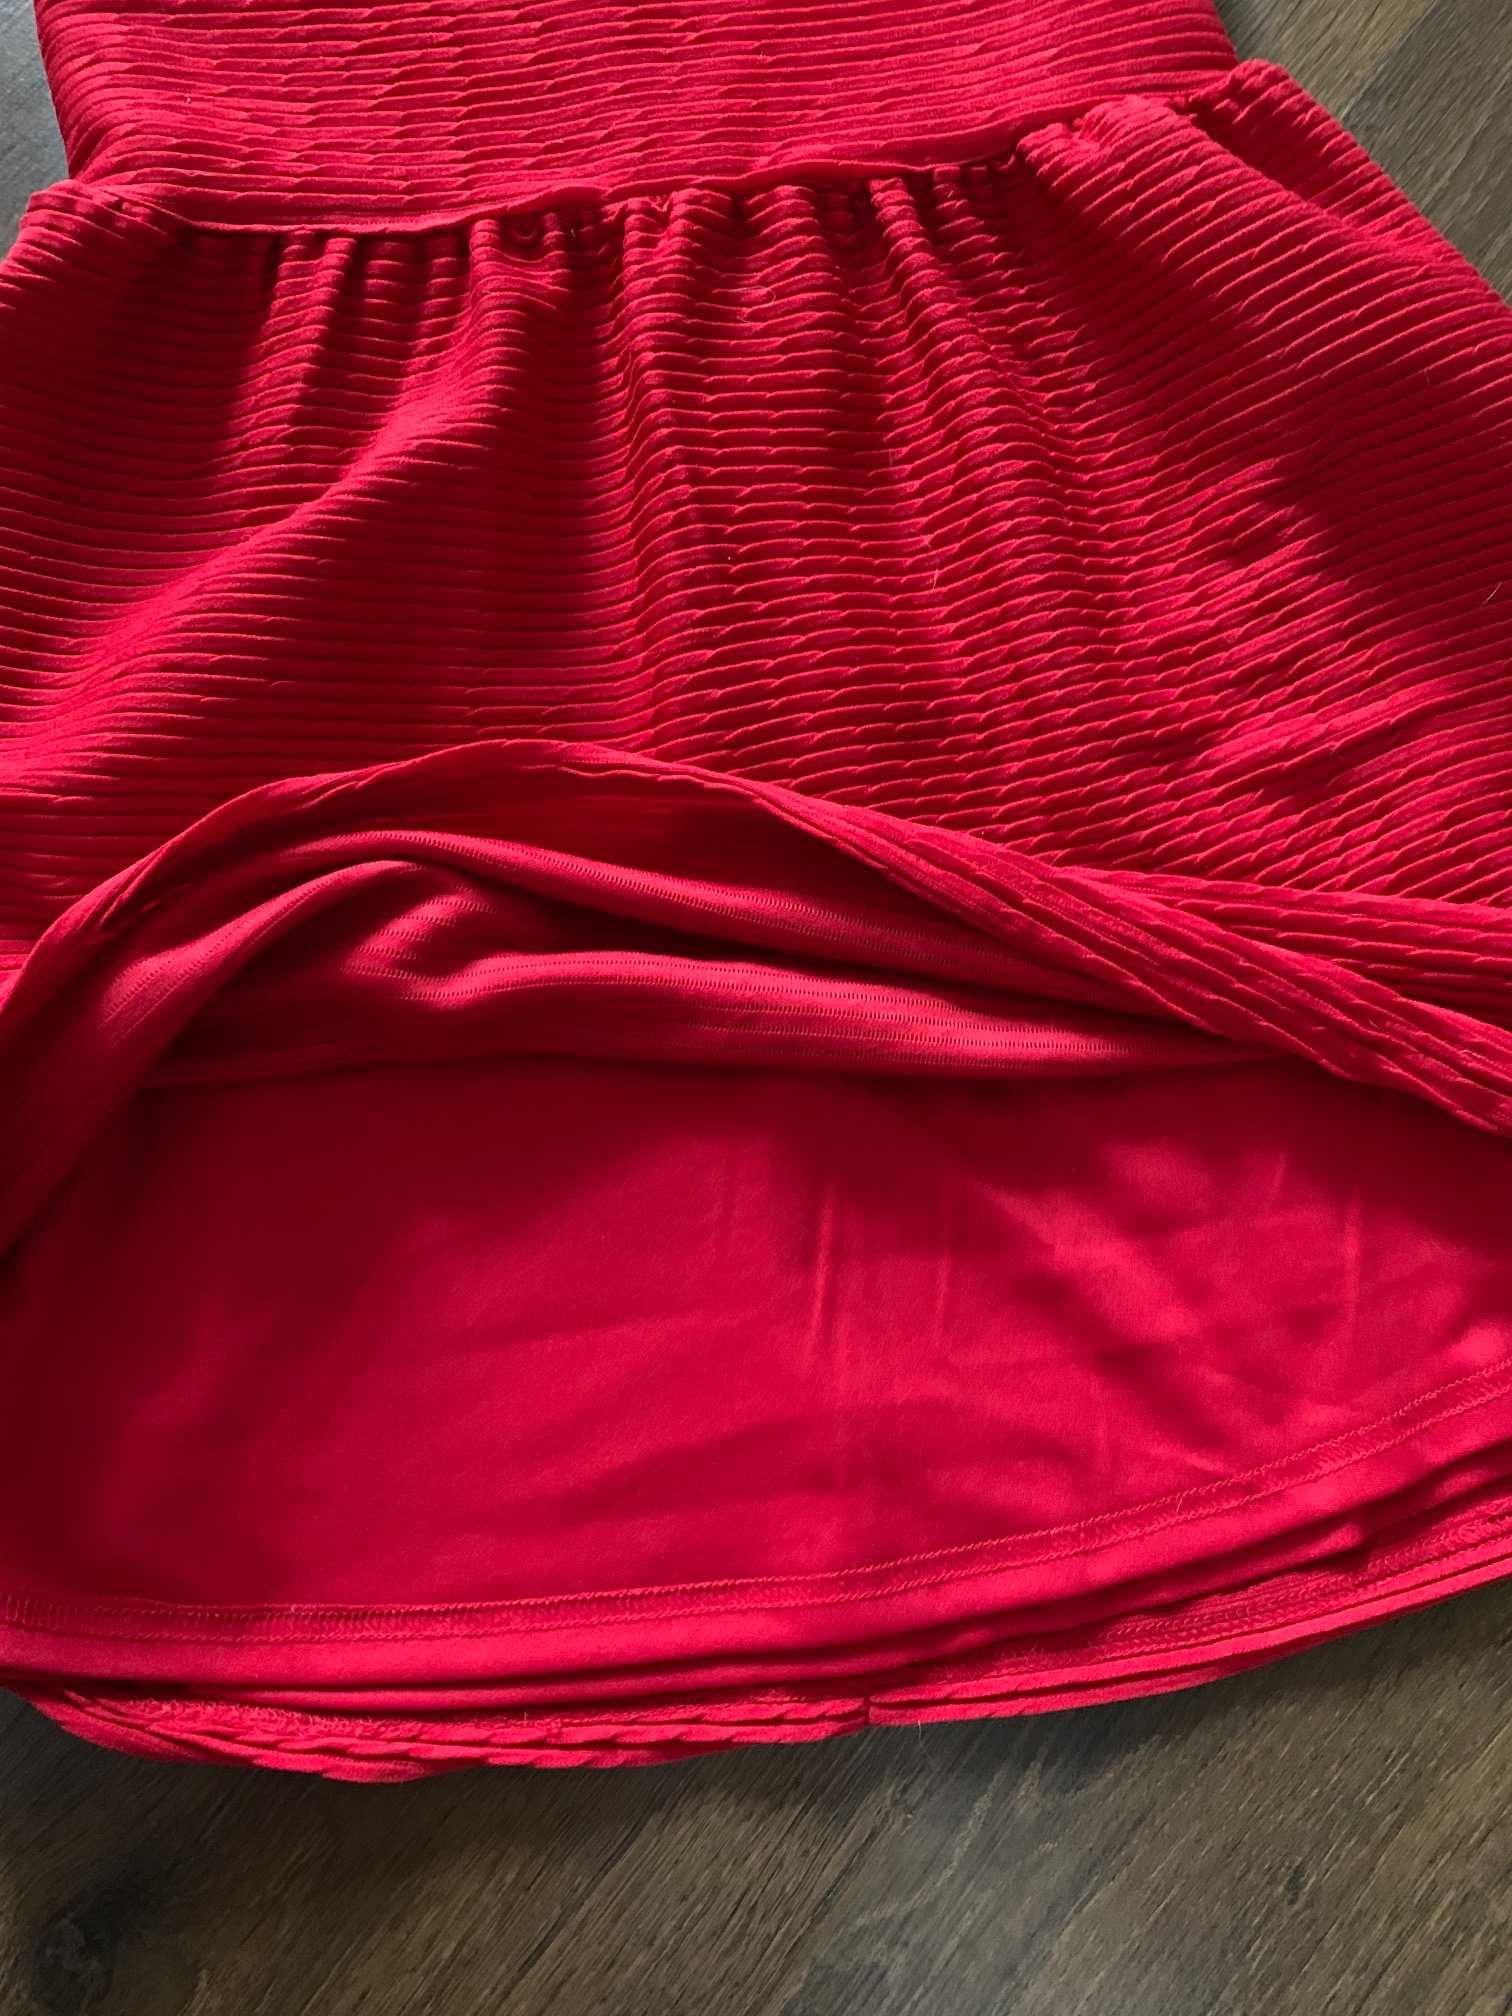 Святкова сукня для дівчинки. Червона сукня.